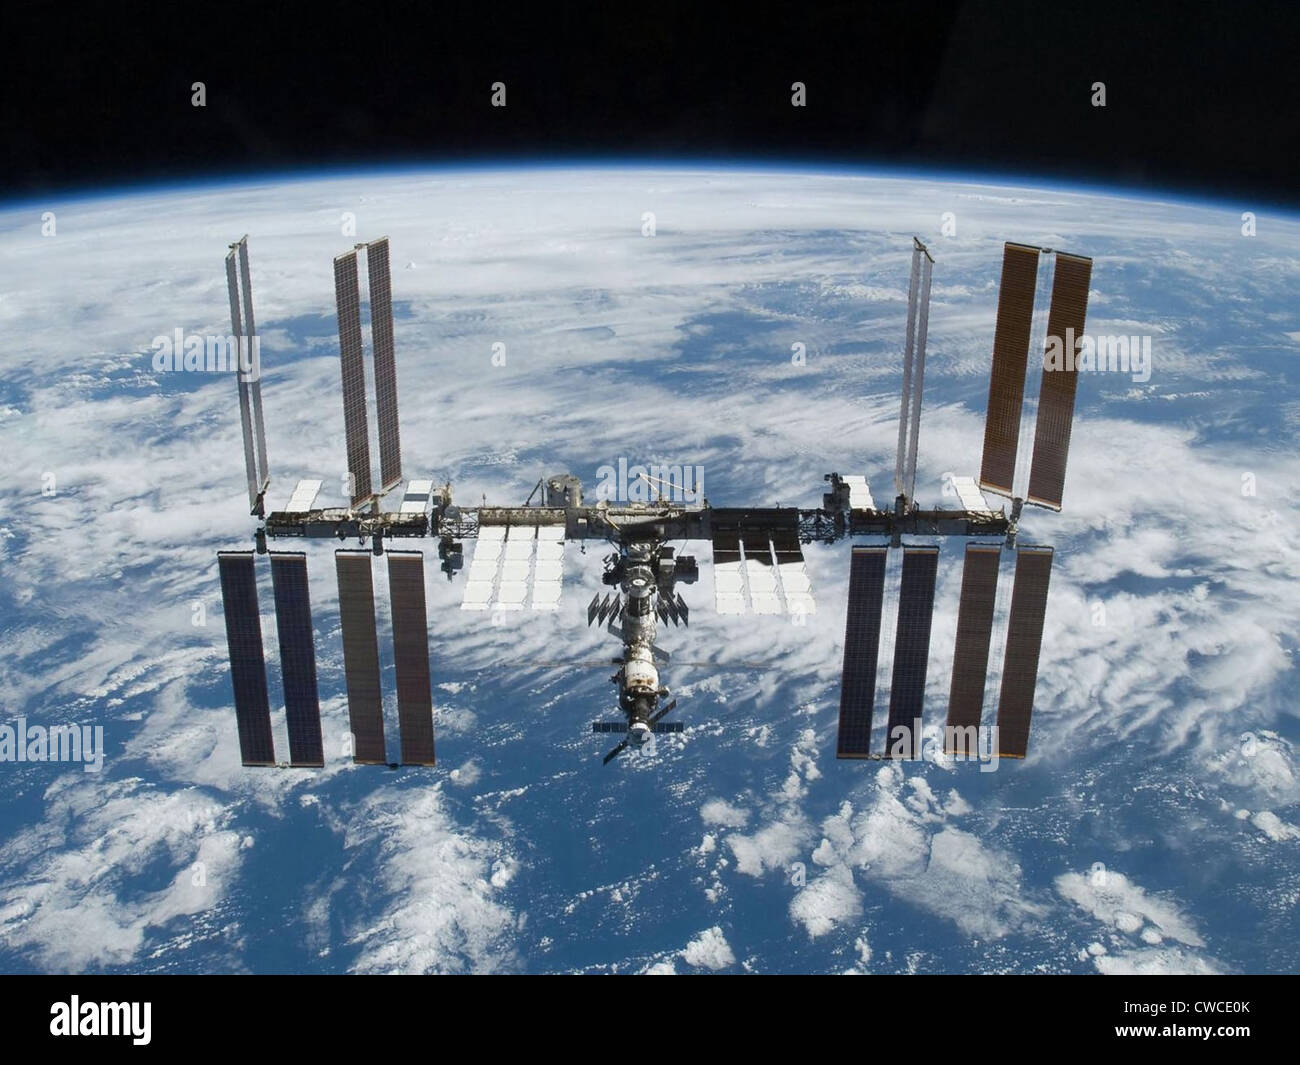 La Stazione Spaziale Internazionale nel 2009. Foto realizzate da una partenza space shuttle Atlantis su nov. 25, 2009. Foto Stock